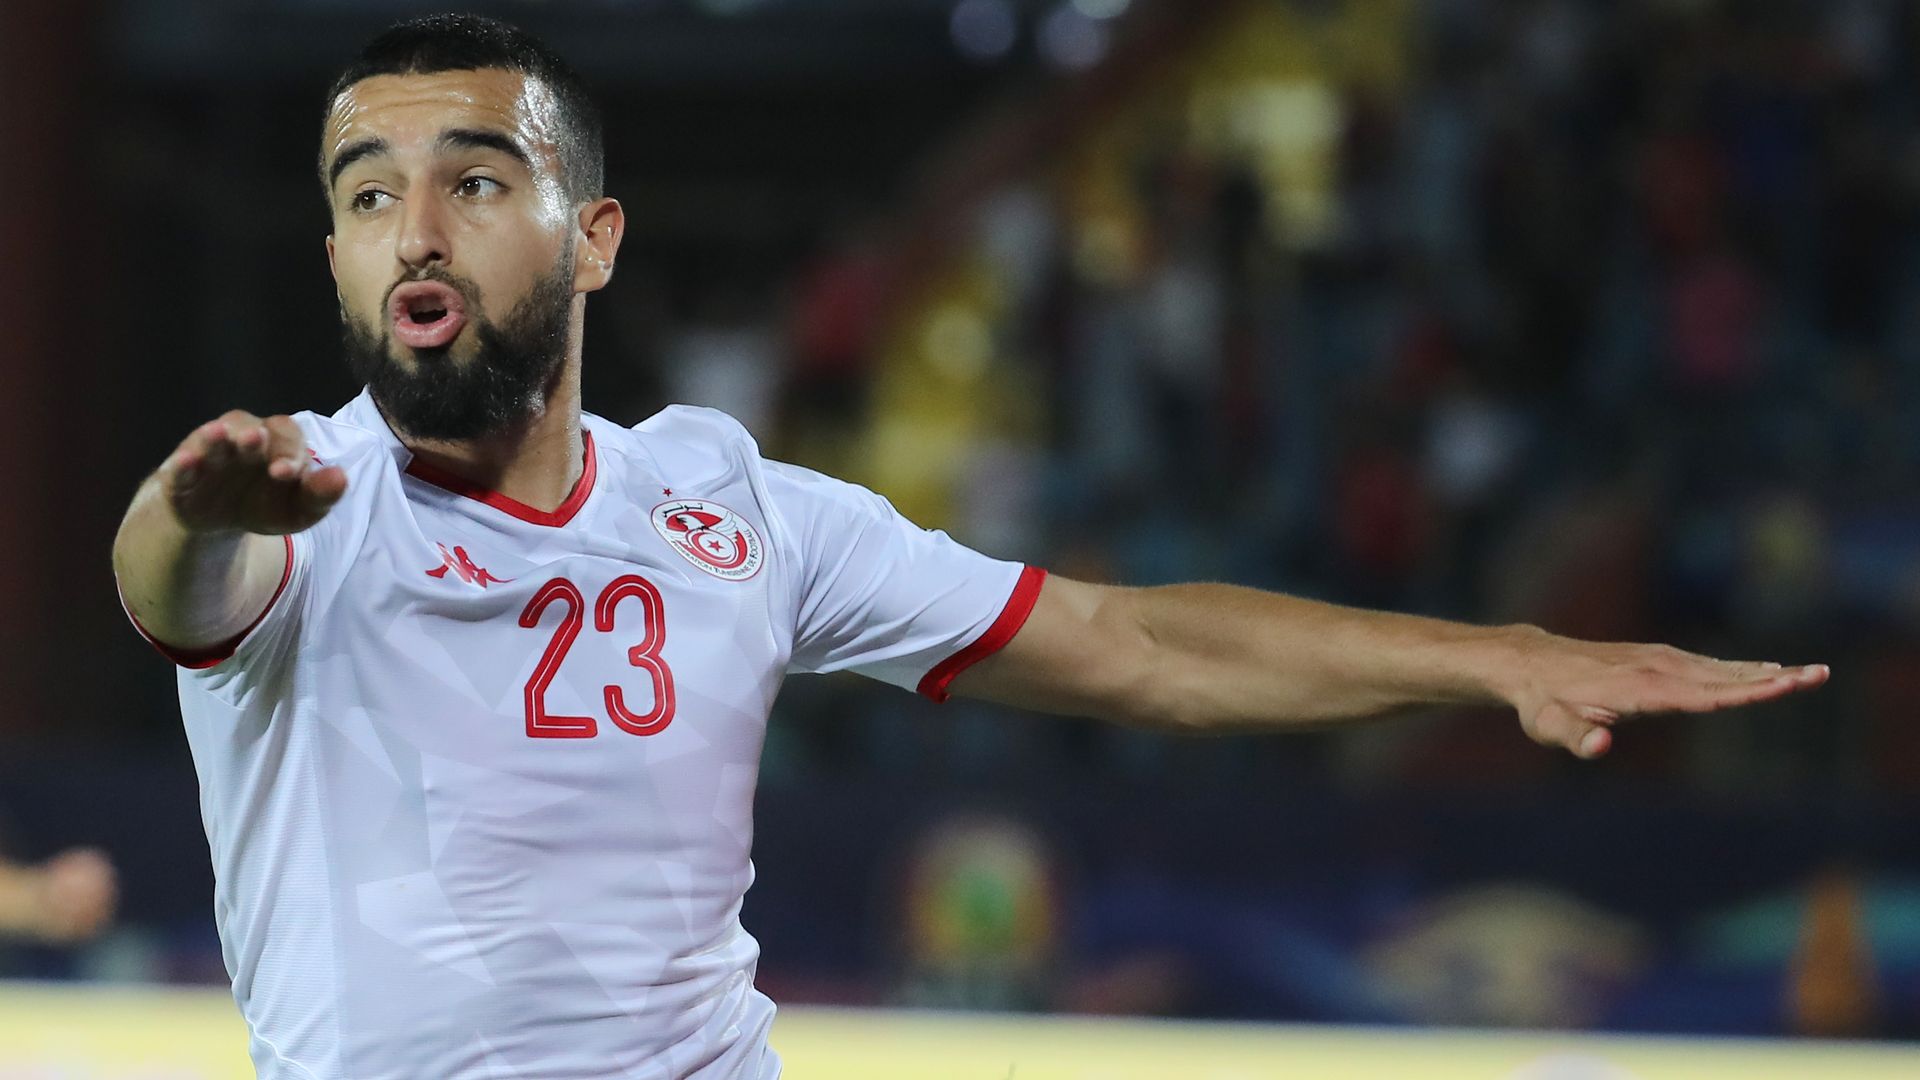 Tunisie Football on X: 🔴⚪ J-1 : 🇬🇶 GUINÉE ÉQUATORIALE - 🇹🇳 TUNISIE 🏆  5e journée de qualification à la #CM2022 ⚽ #GNQTUN 🇬🇶🇹🇳 🏟 Stade de  Malabo 📺FIFA TV () 🇹🇳, L'Equipe LIVE 🇫🇷 ⌚ 17H   / X